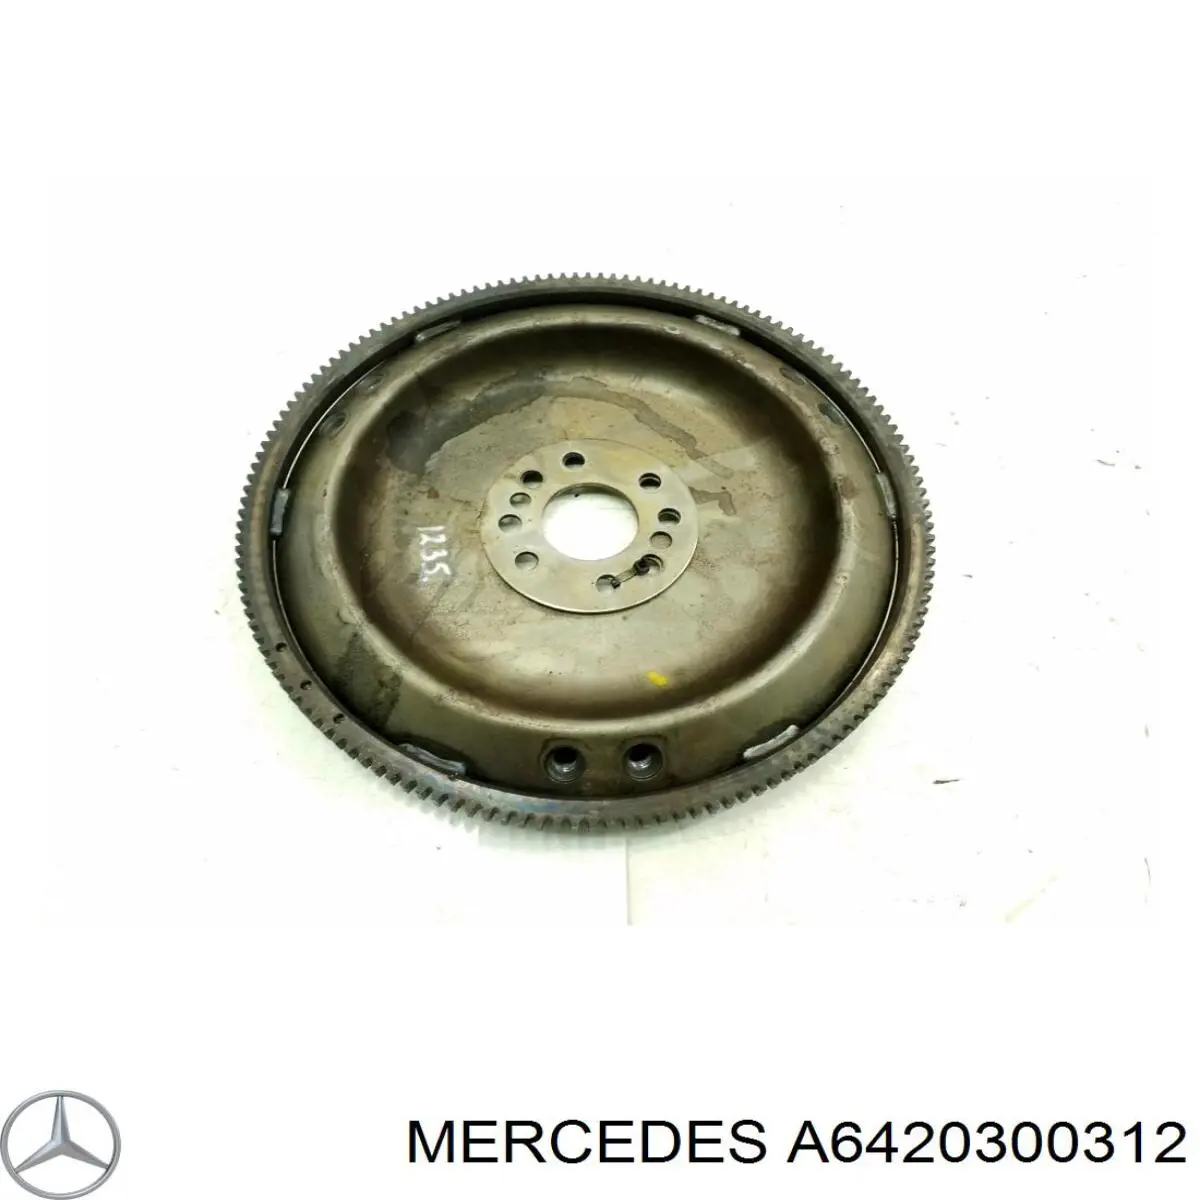 6420300312 Mercedes volante de motor